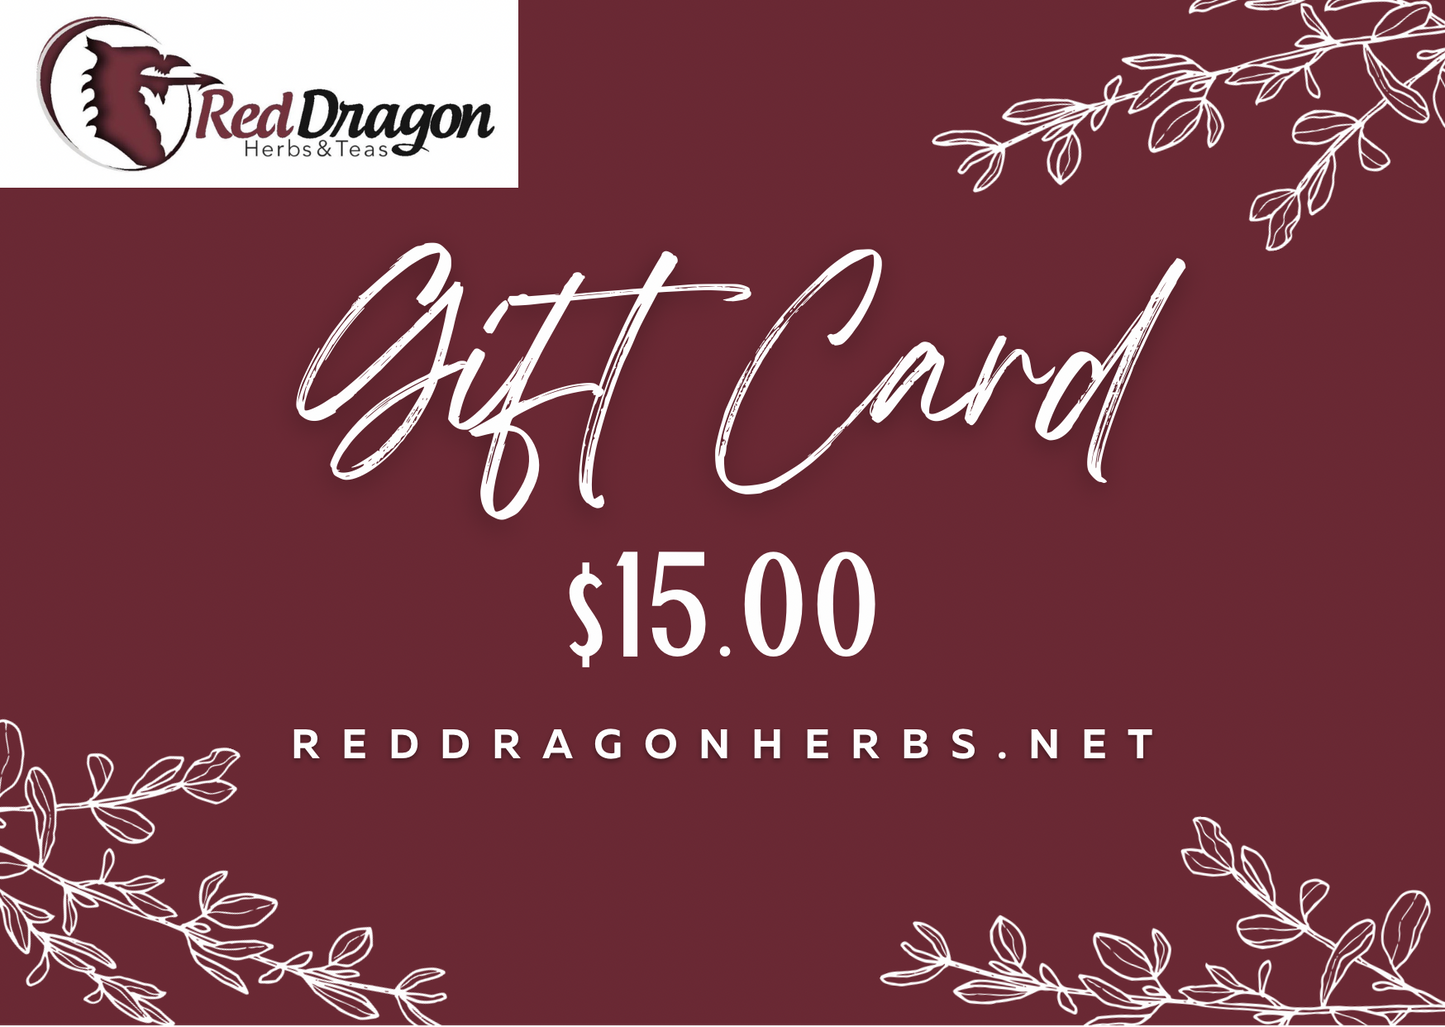 Red Dragon Herbs & Teas Gift Card